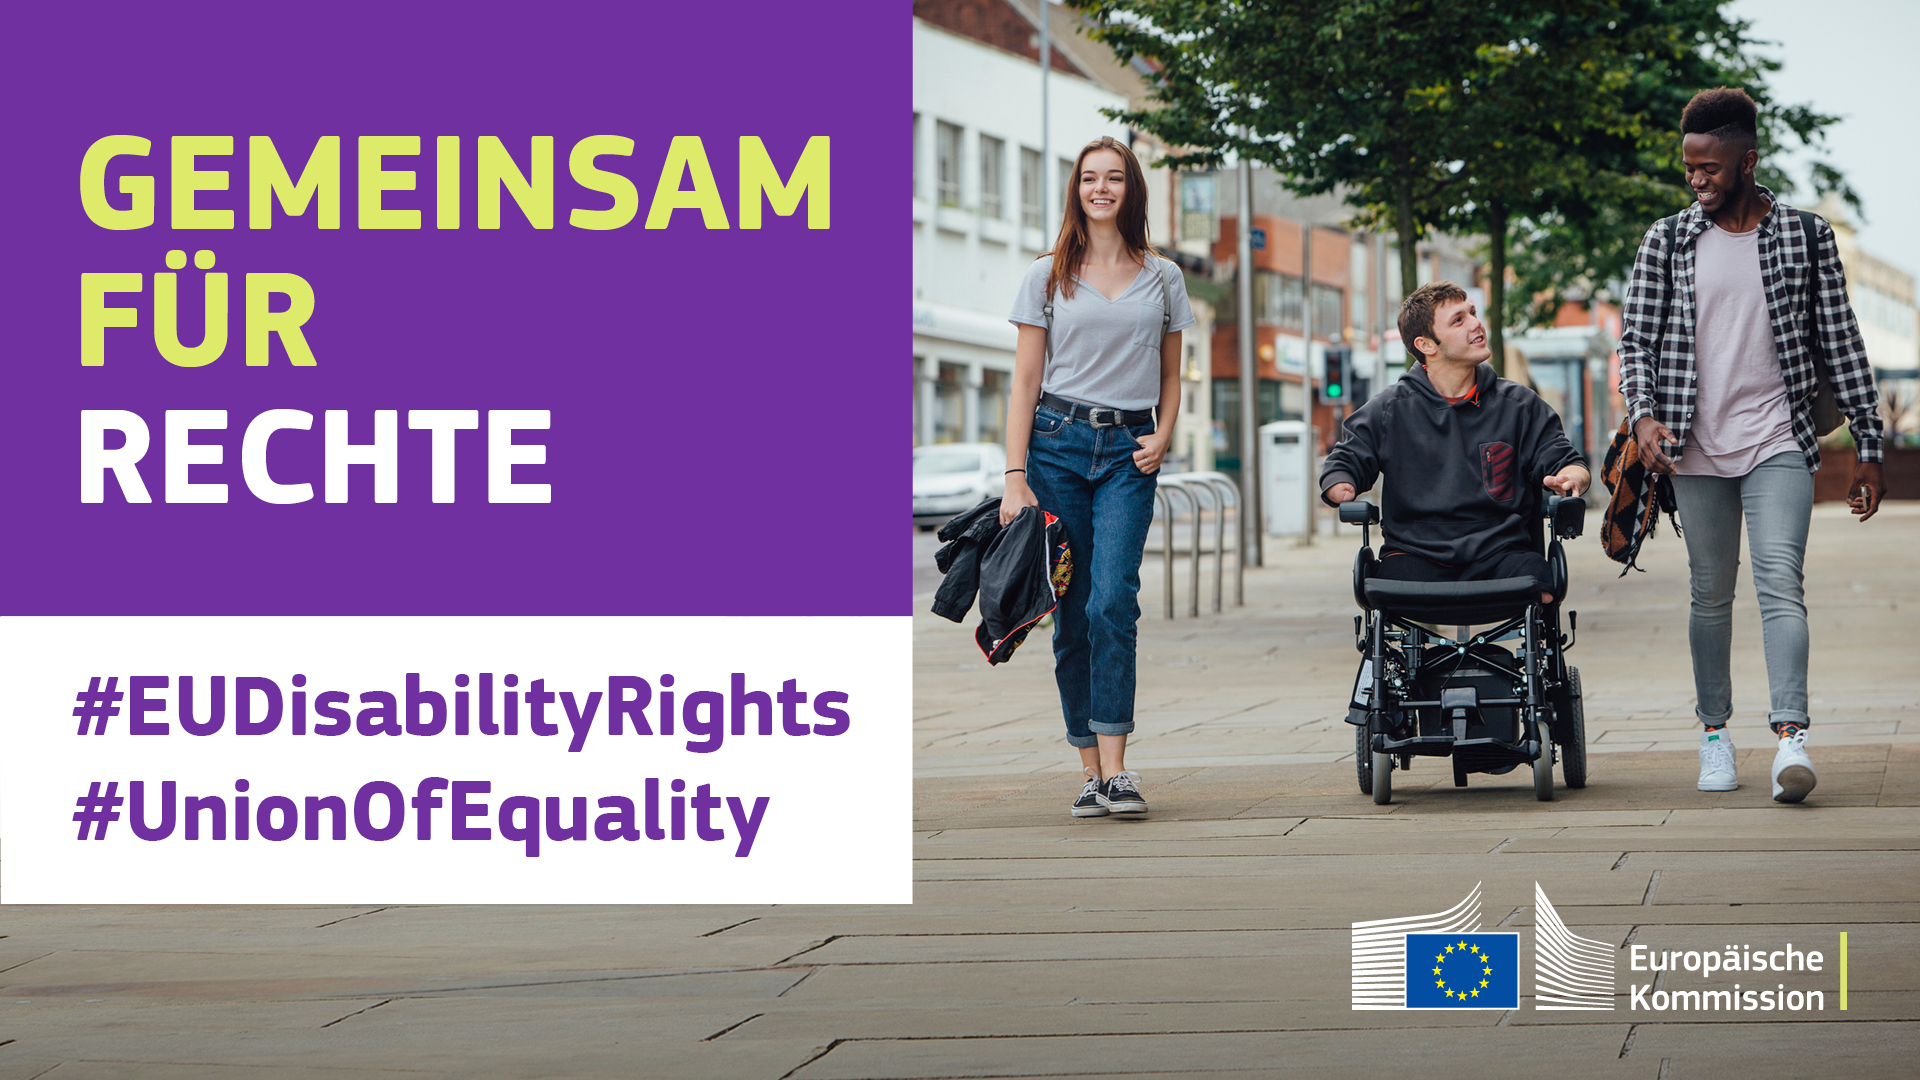 Drei junge Menschen auf dem Weg durch eine Stadt. Einer ist im Rollstuhl. Text besagt: Gemeinsam für Rechte, #EUDisabilityRights, #UnionOfEquality.